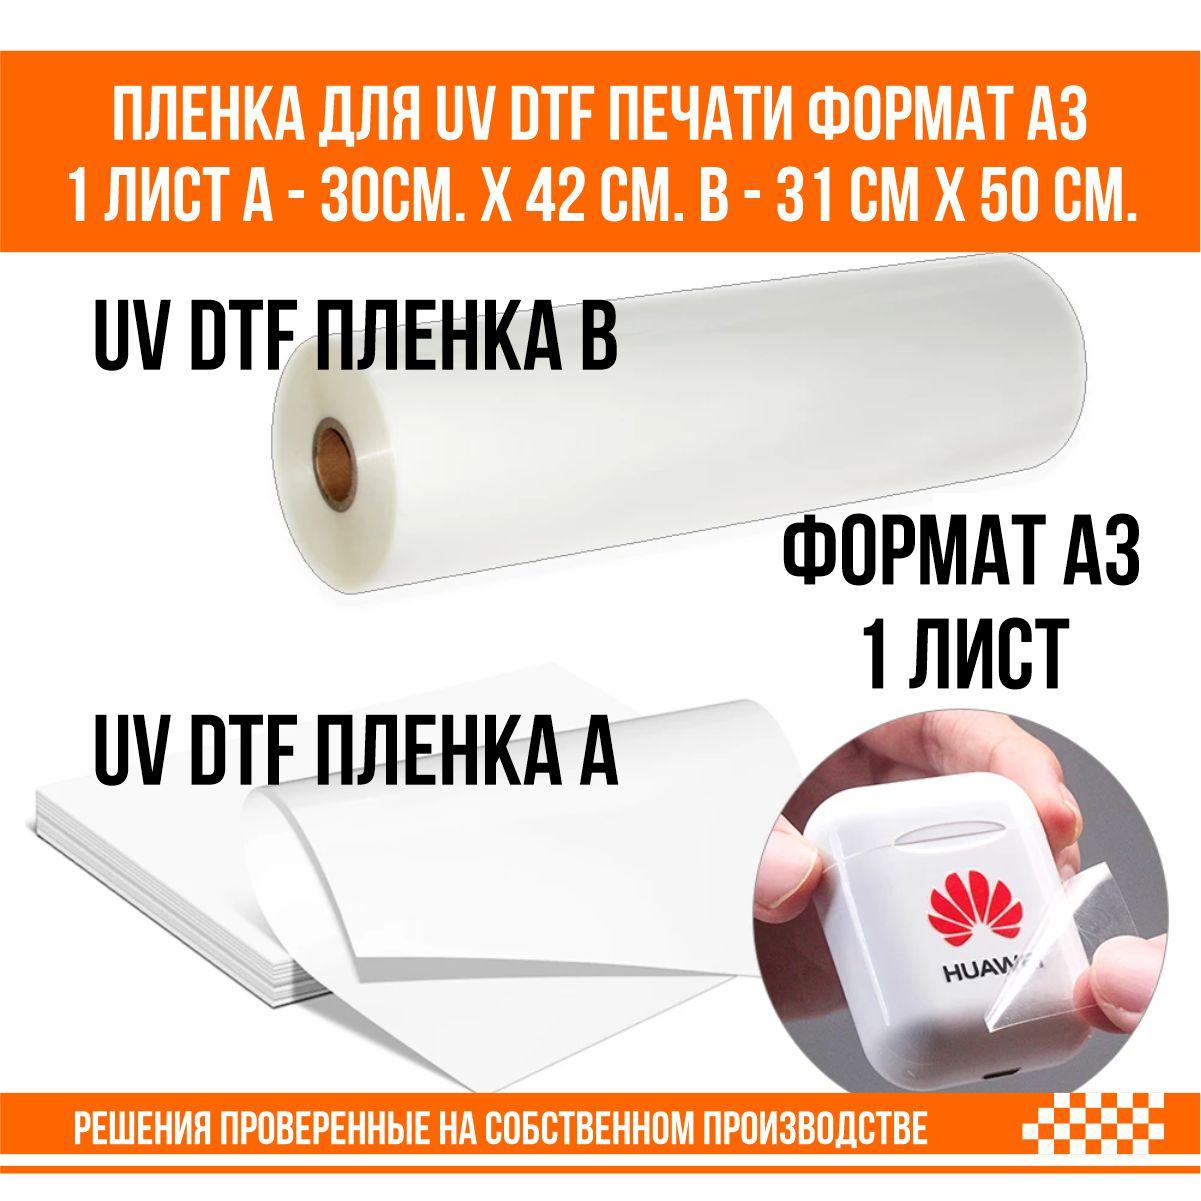 Пленка для UV DTF печати формат А3 1 лист А - 30см. х 42 см. B - 31 см х 50 cм., фото 1